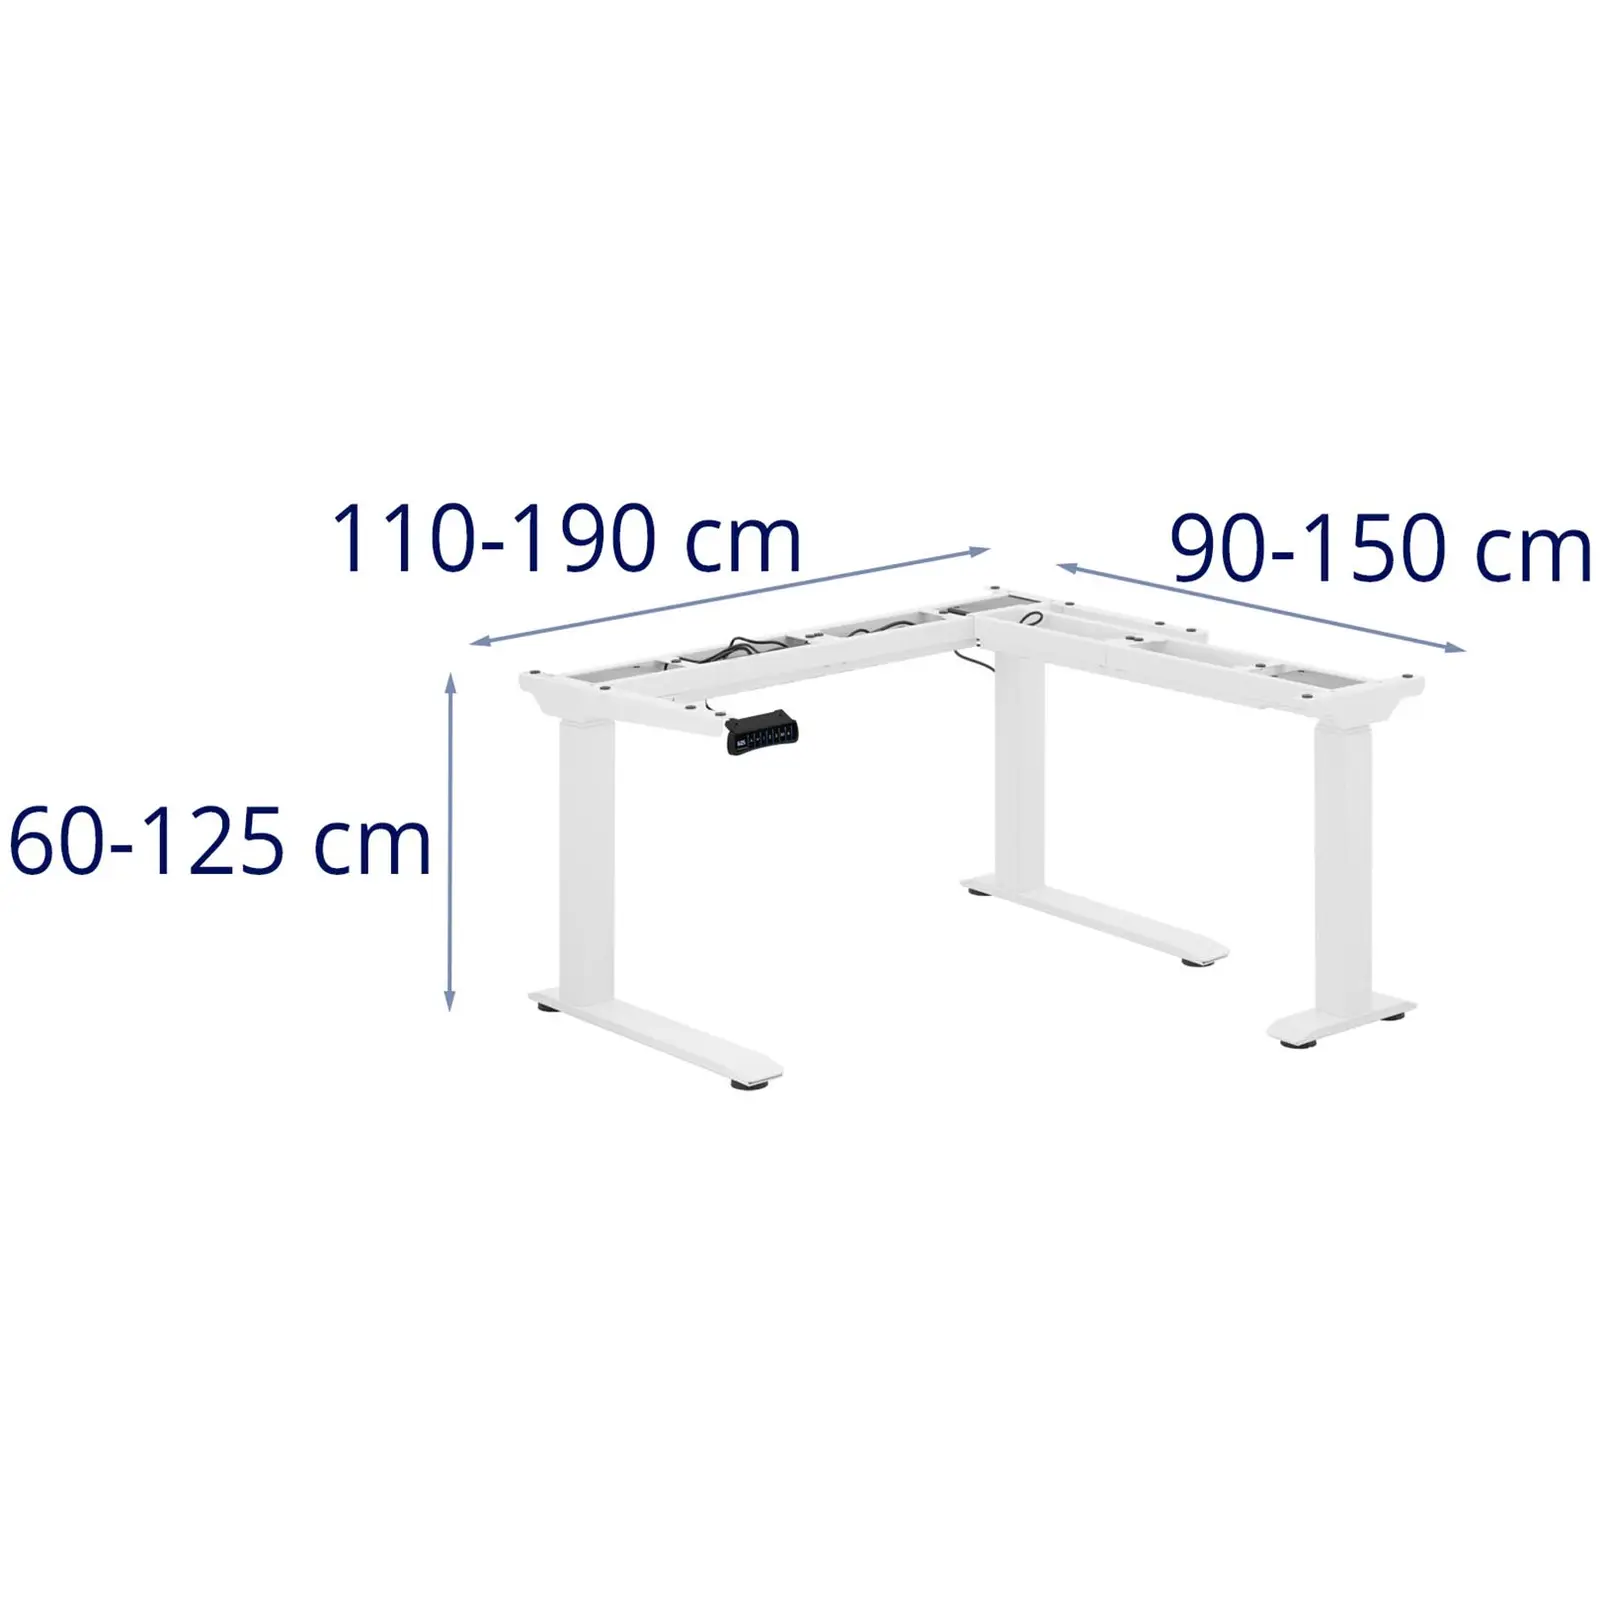 Seconda Mano Supporto scrivania regolabile in altezza ad angolo - Altezza: 60 - 125 cm - Larghezza: 110 - 190 cm (sinistra) / 90 - 150 cm (destra)